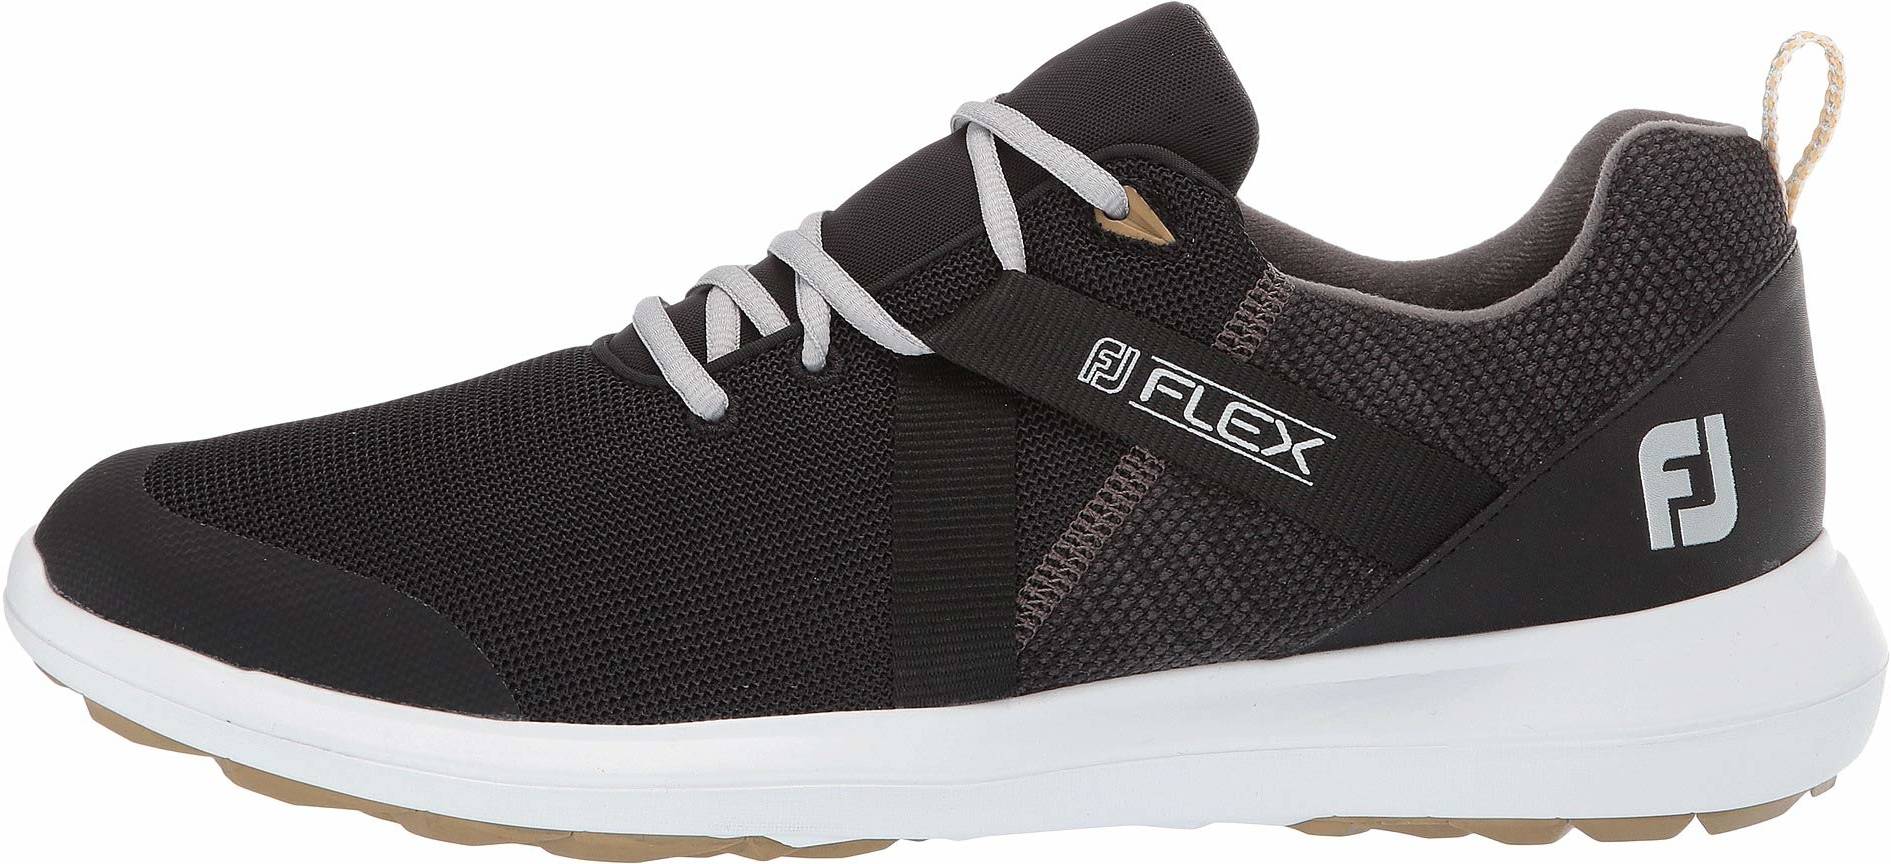 footjoy mens flex golf shoes